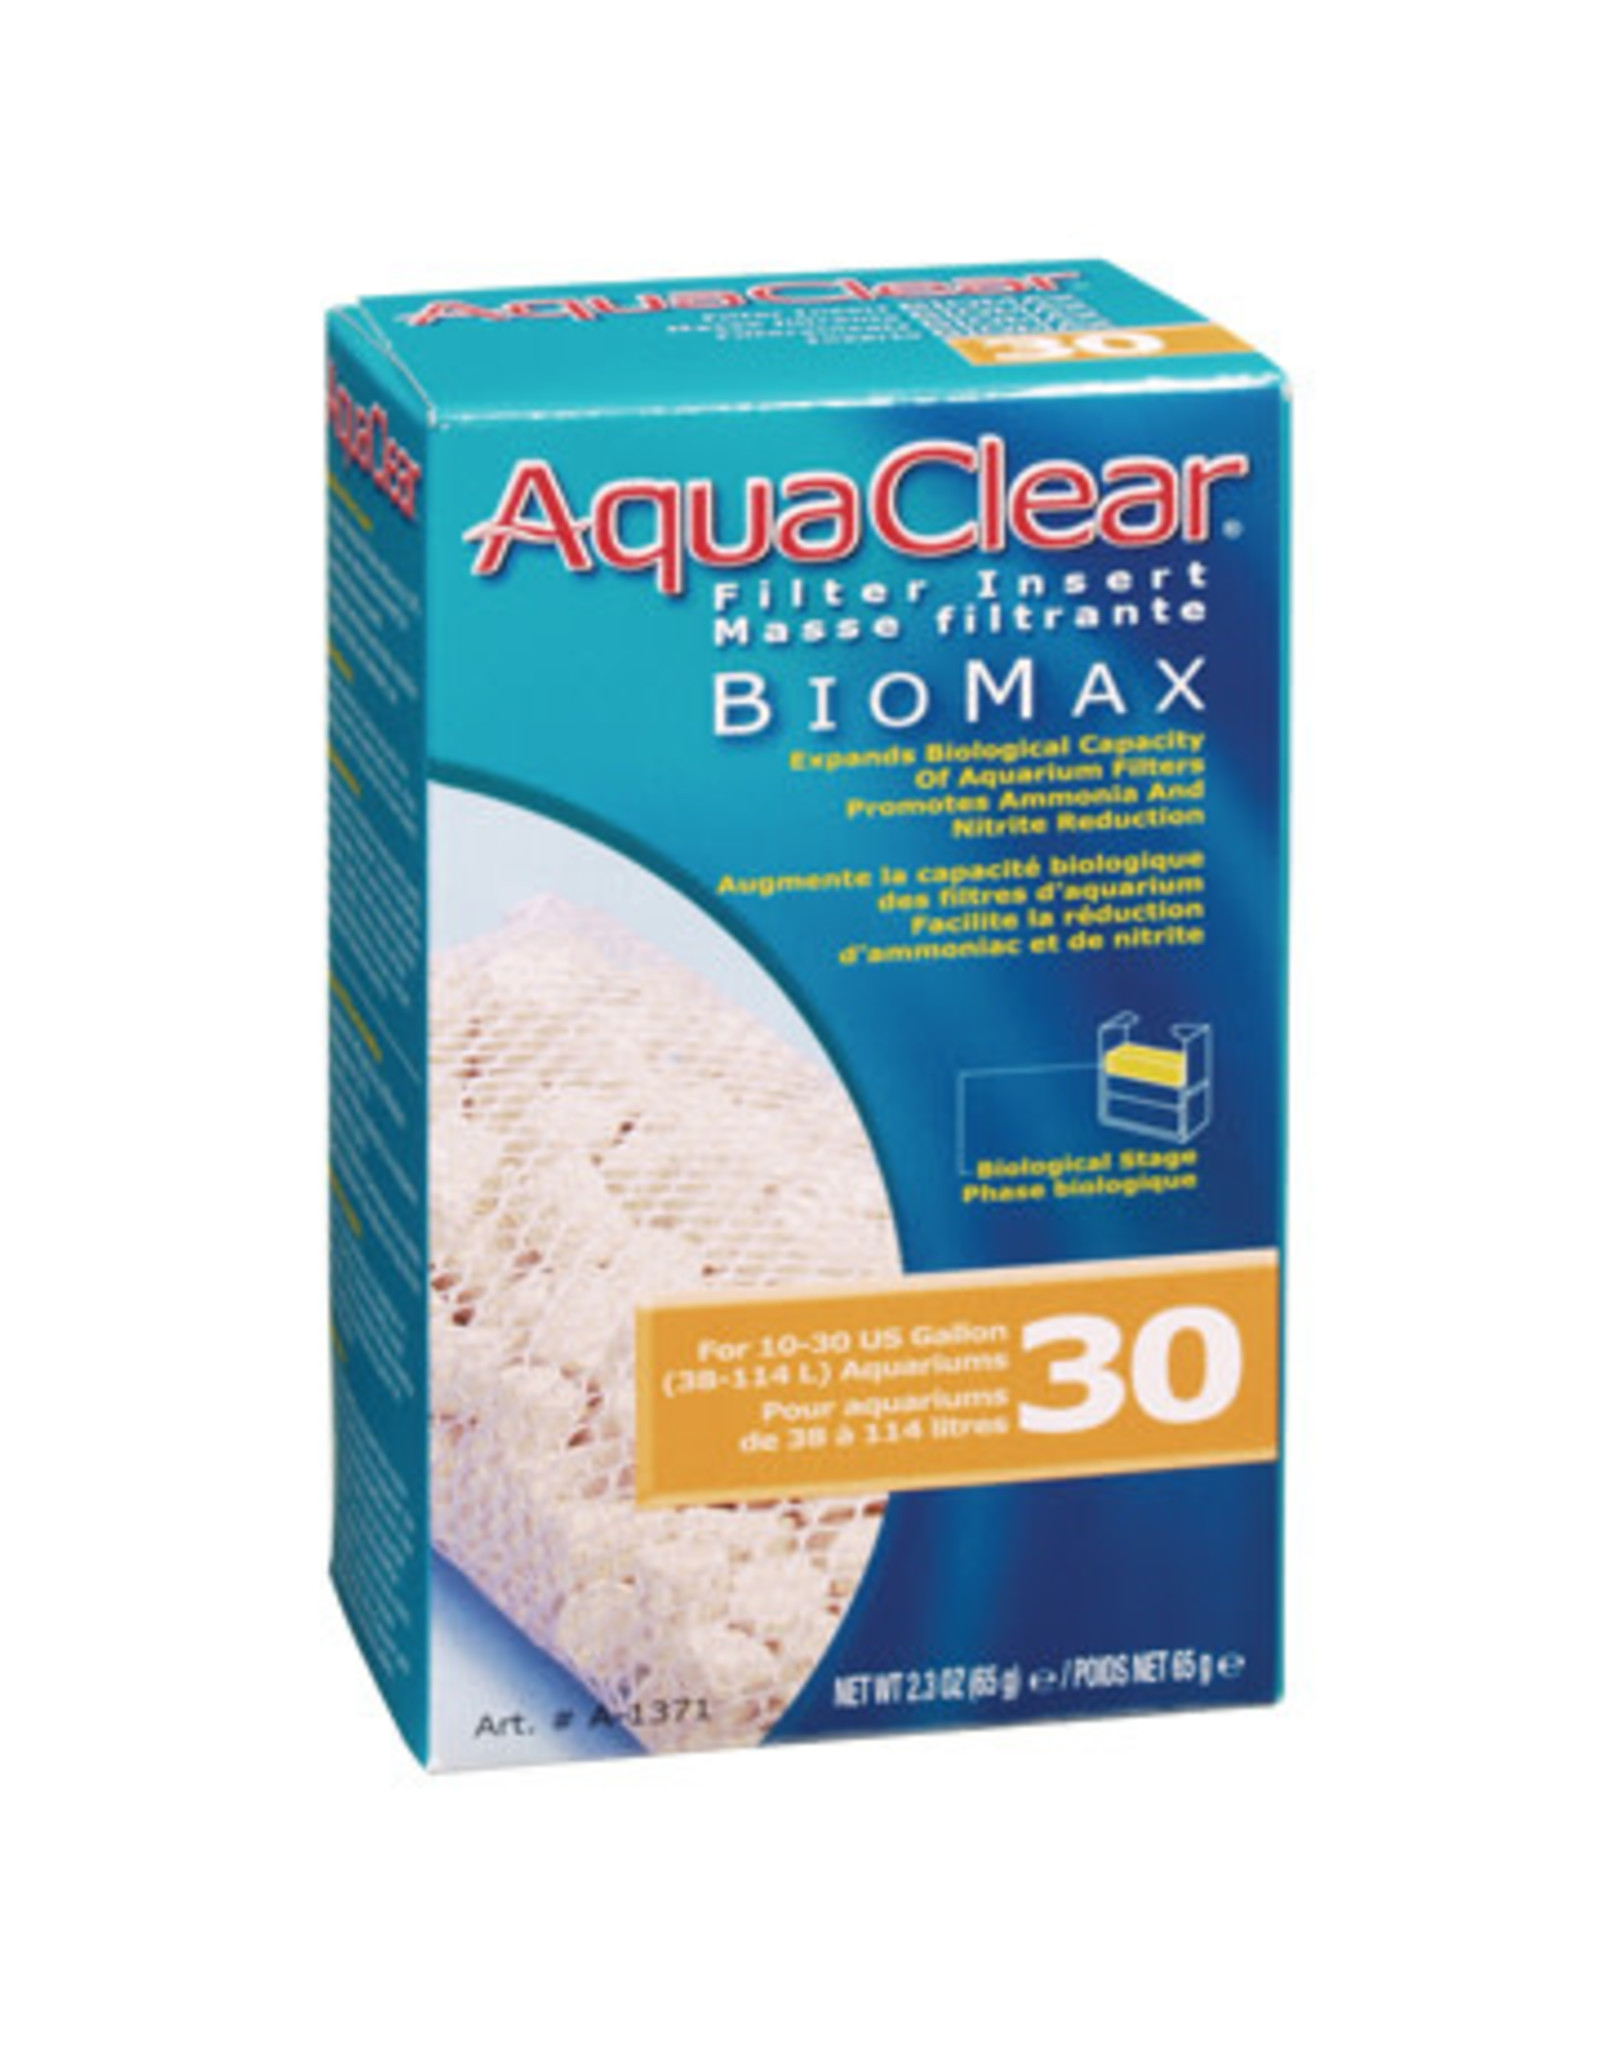 AquaClear AquaClear 30 Bio-Max Insert 65g